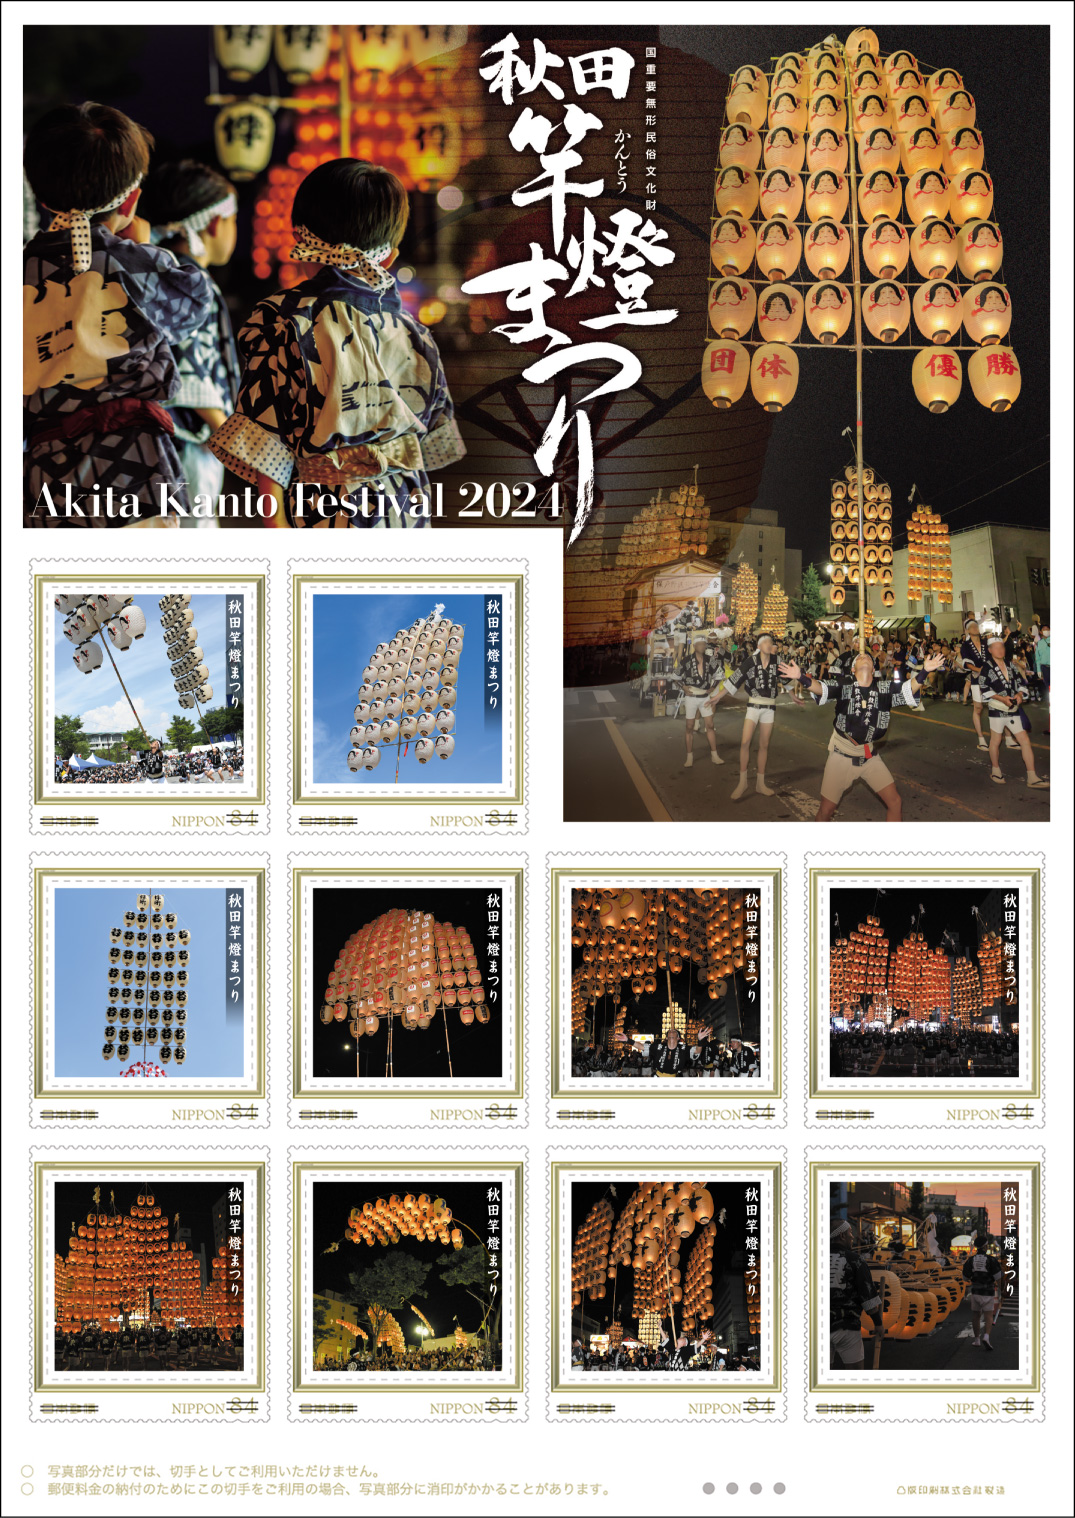 オリジナル フレーム切手「秋田竿燈まつり　Akita Kanto Festival 2024」の販売開始および贈呈式の開催